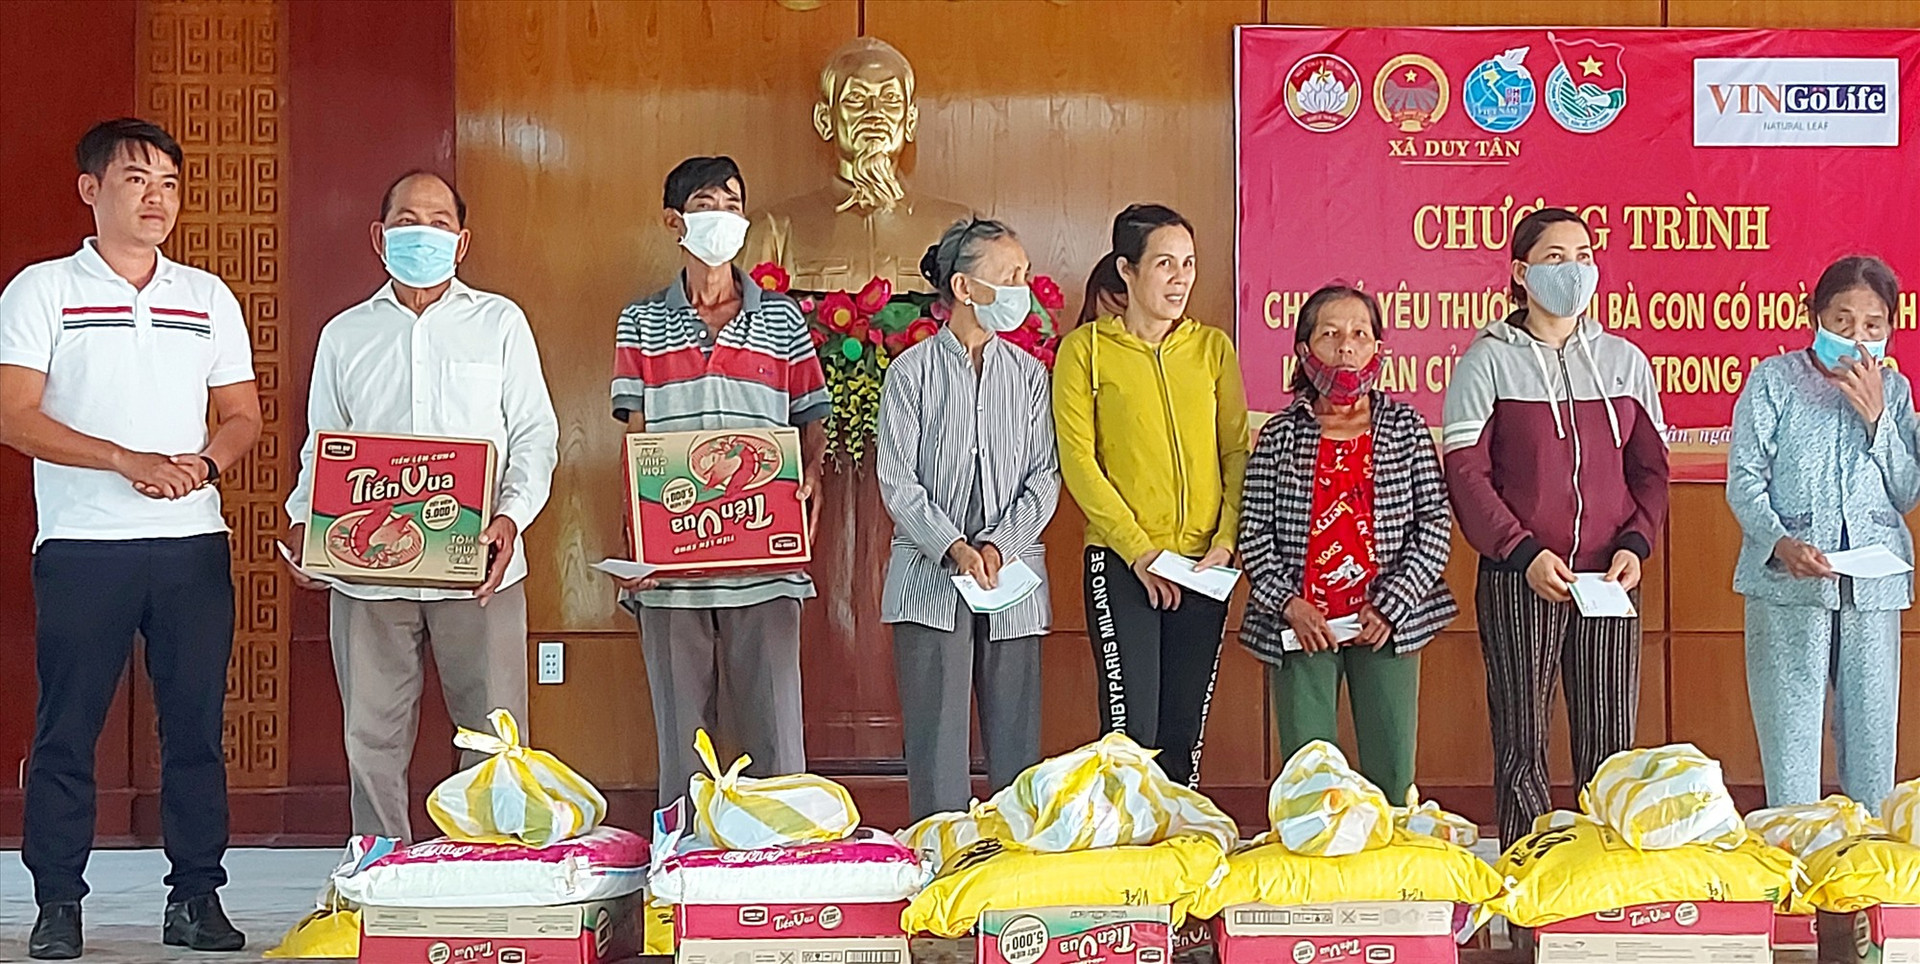 Công ty sơn VinGoLife tặng 20 suất quà cho bà con nghèo tàn tật xã Duy Tân( Duy Xuyên). Ảnh Lê A Dũng